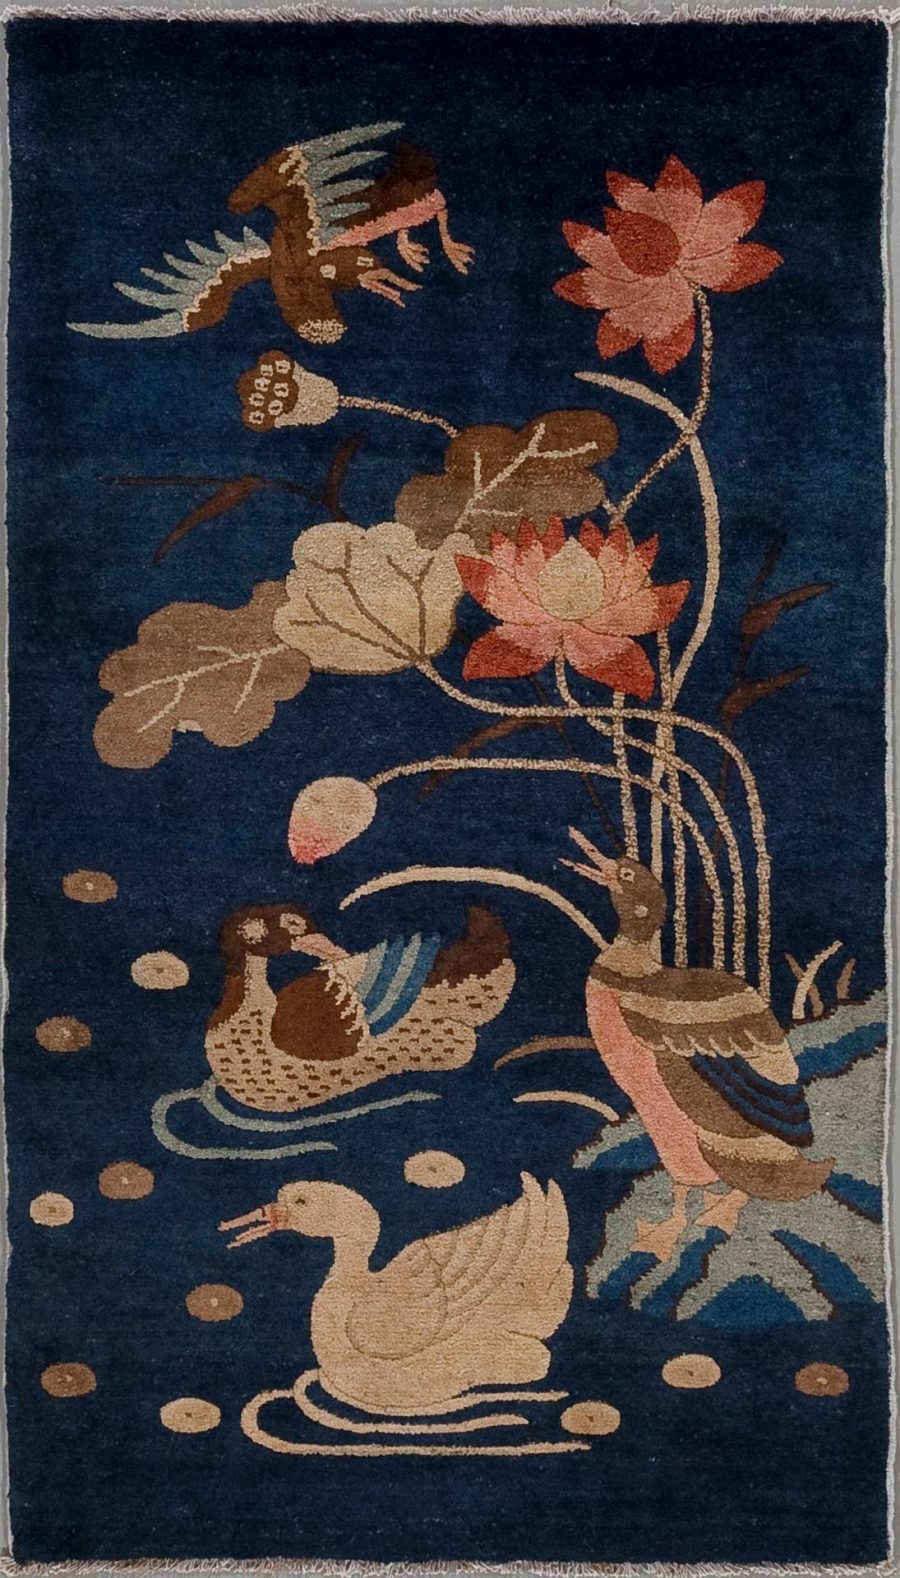 Handgeknüpfter Teppich mit einem detaillierten Motiv von Vögeln und Lotusblumen in mehreren Farben auf einem dunkelblauen Hintergrund.